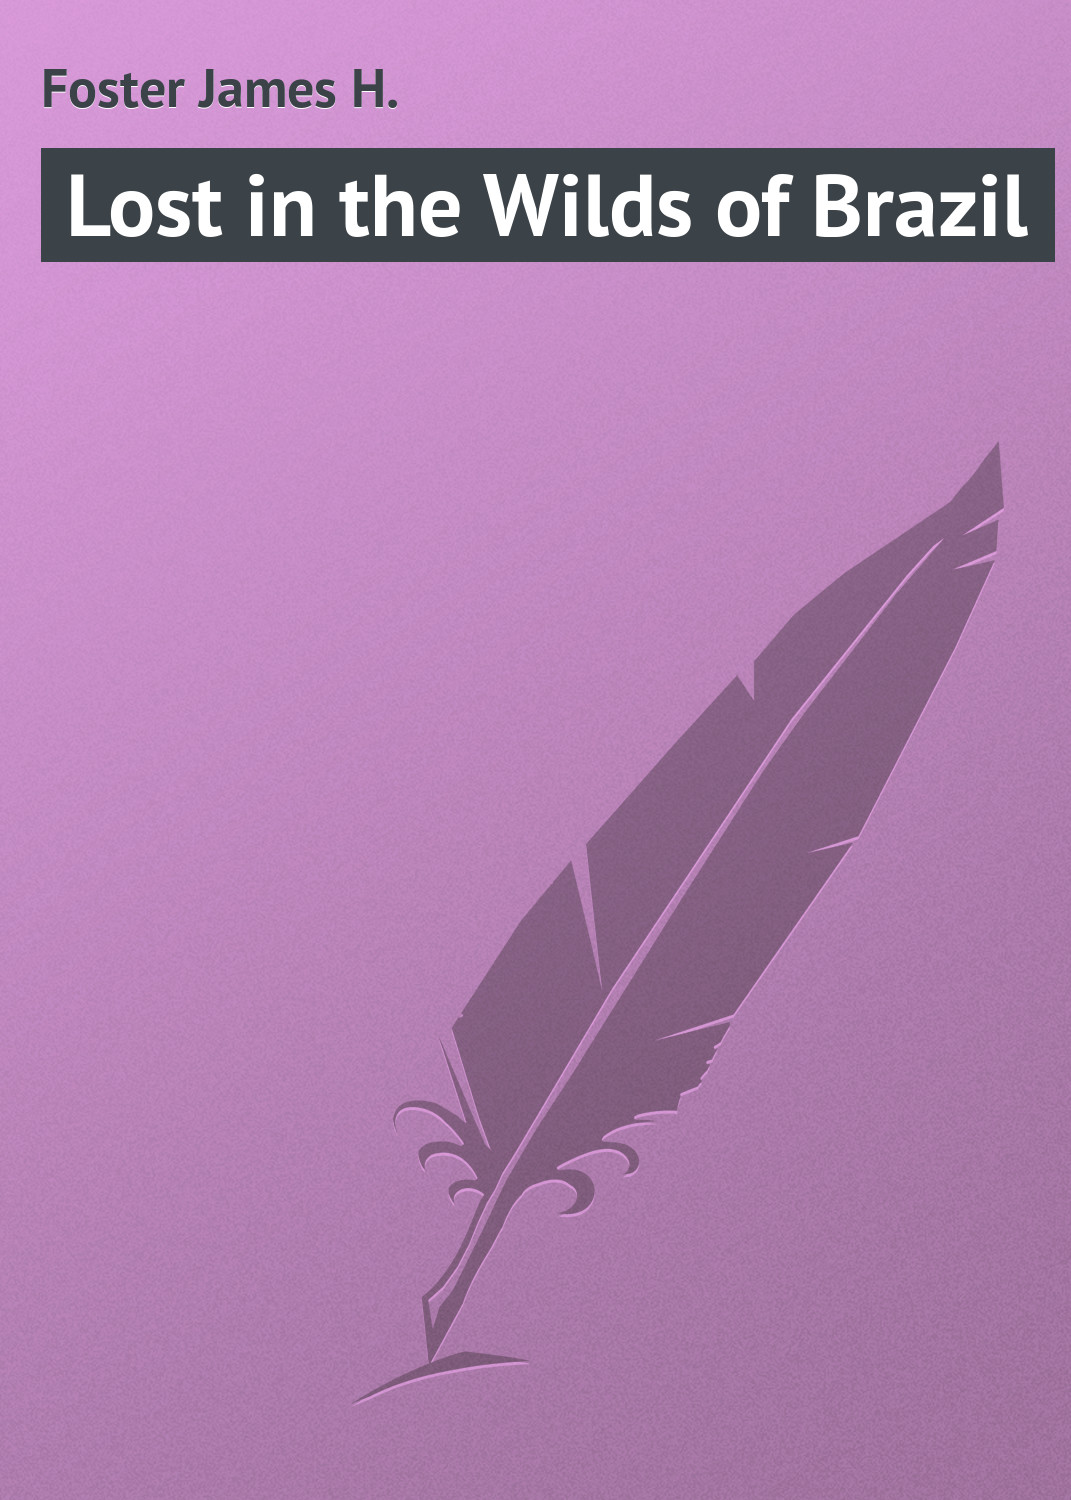 Книга Lost in the Wilds of Brazil из серии , созданная James Foster, может относится к жанру Приключения: прочее, Зарубежная классика. Стоимость электронной книги Lost in the Wilds of Brazil с идентификатором 23145363 составляет 5.99 руб.